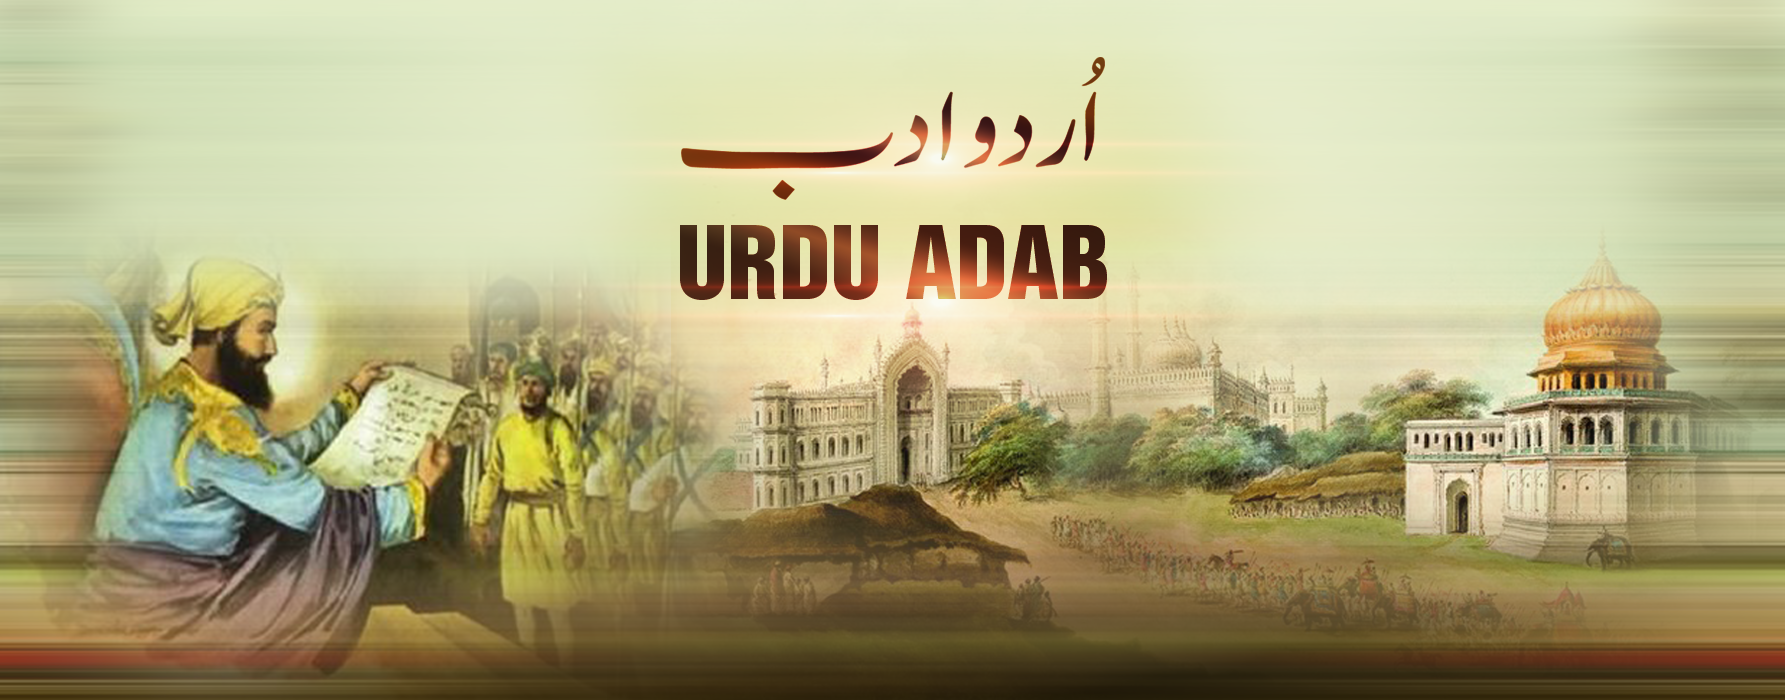 #56 Wapsi ka safarواپسی کا سفر | Urdu Adab